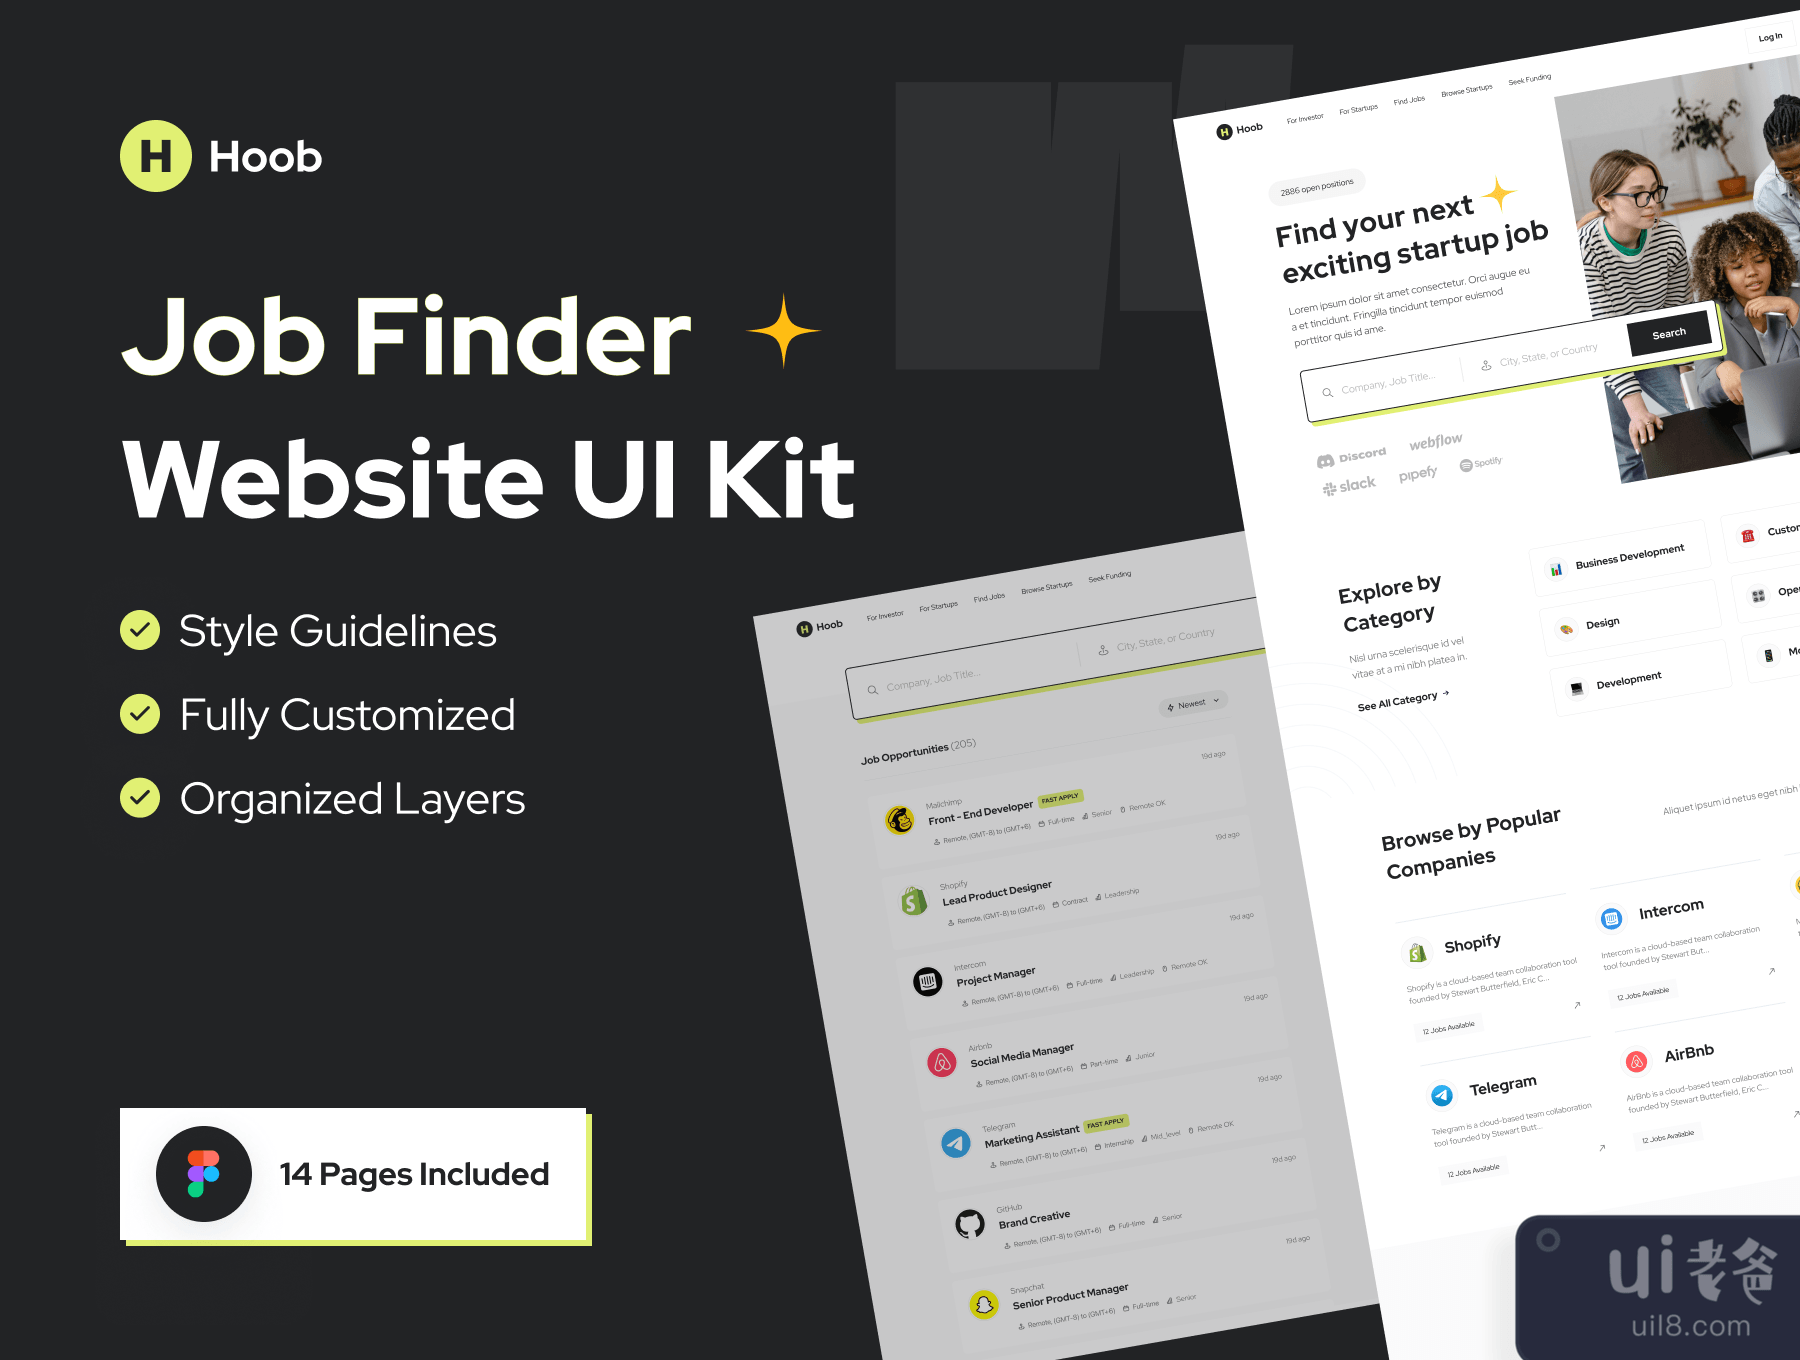 Hoob - 工作搜索网站UI包 (Hoob - Job Finder Website UI Kit)插图